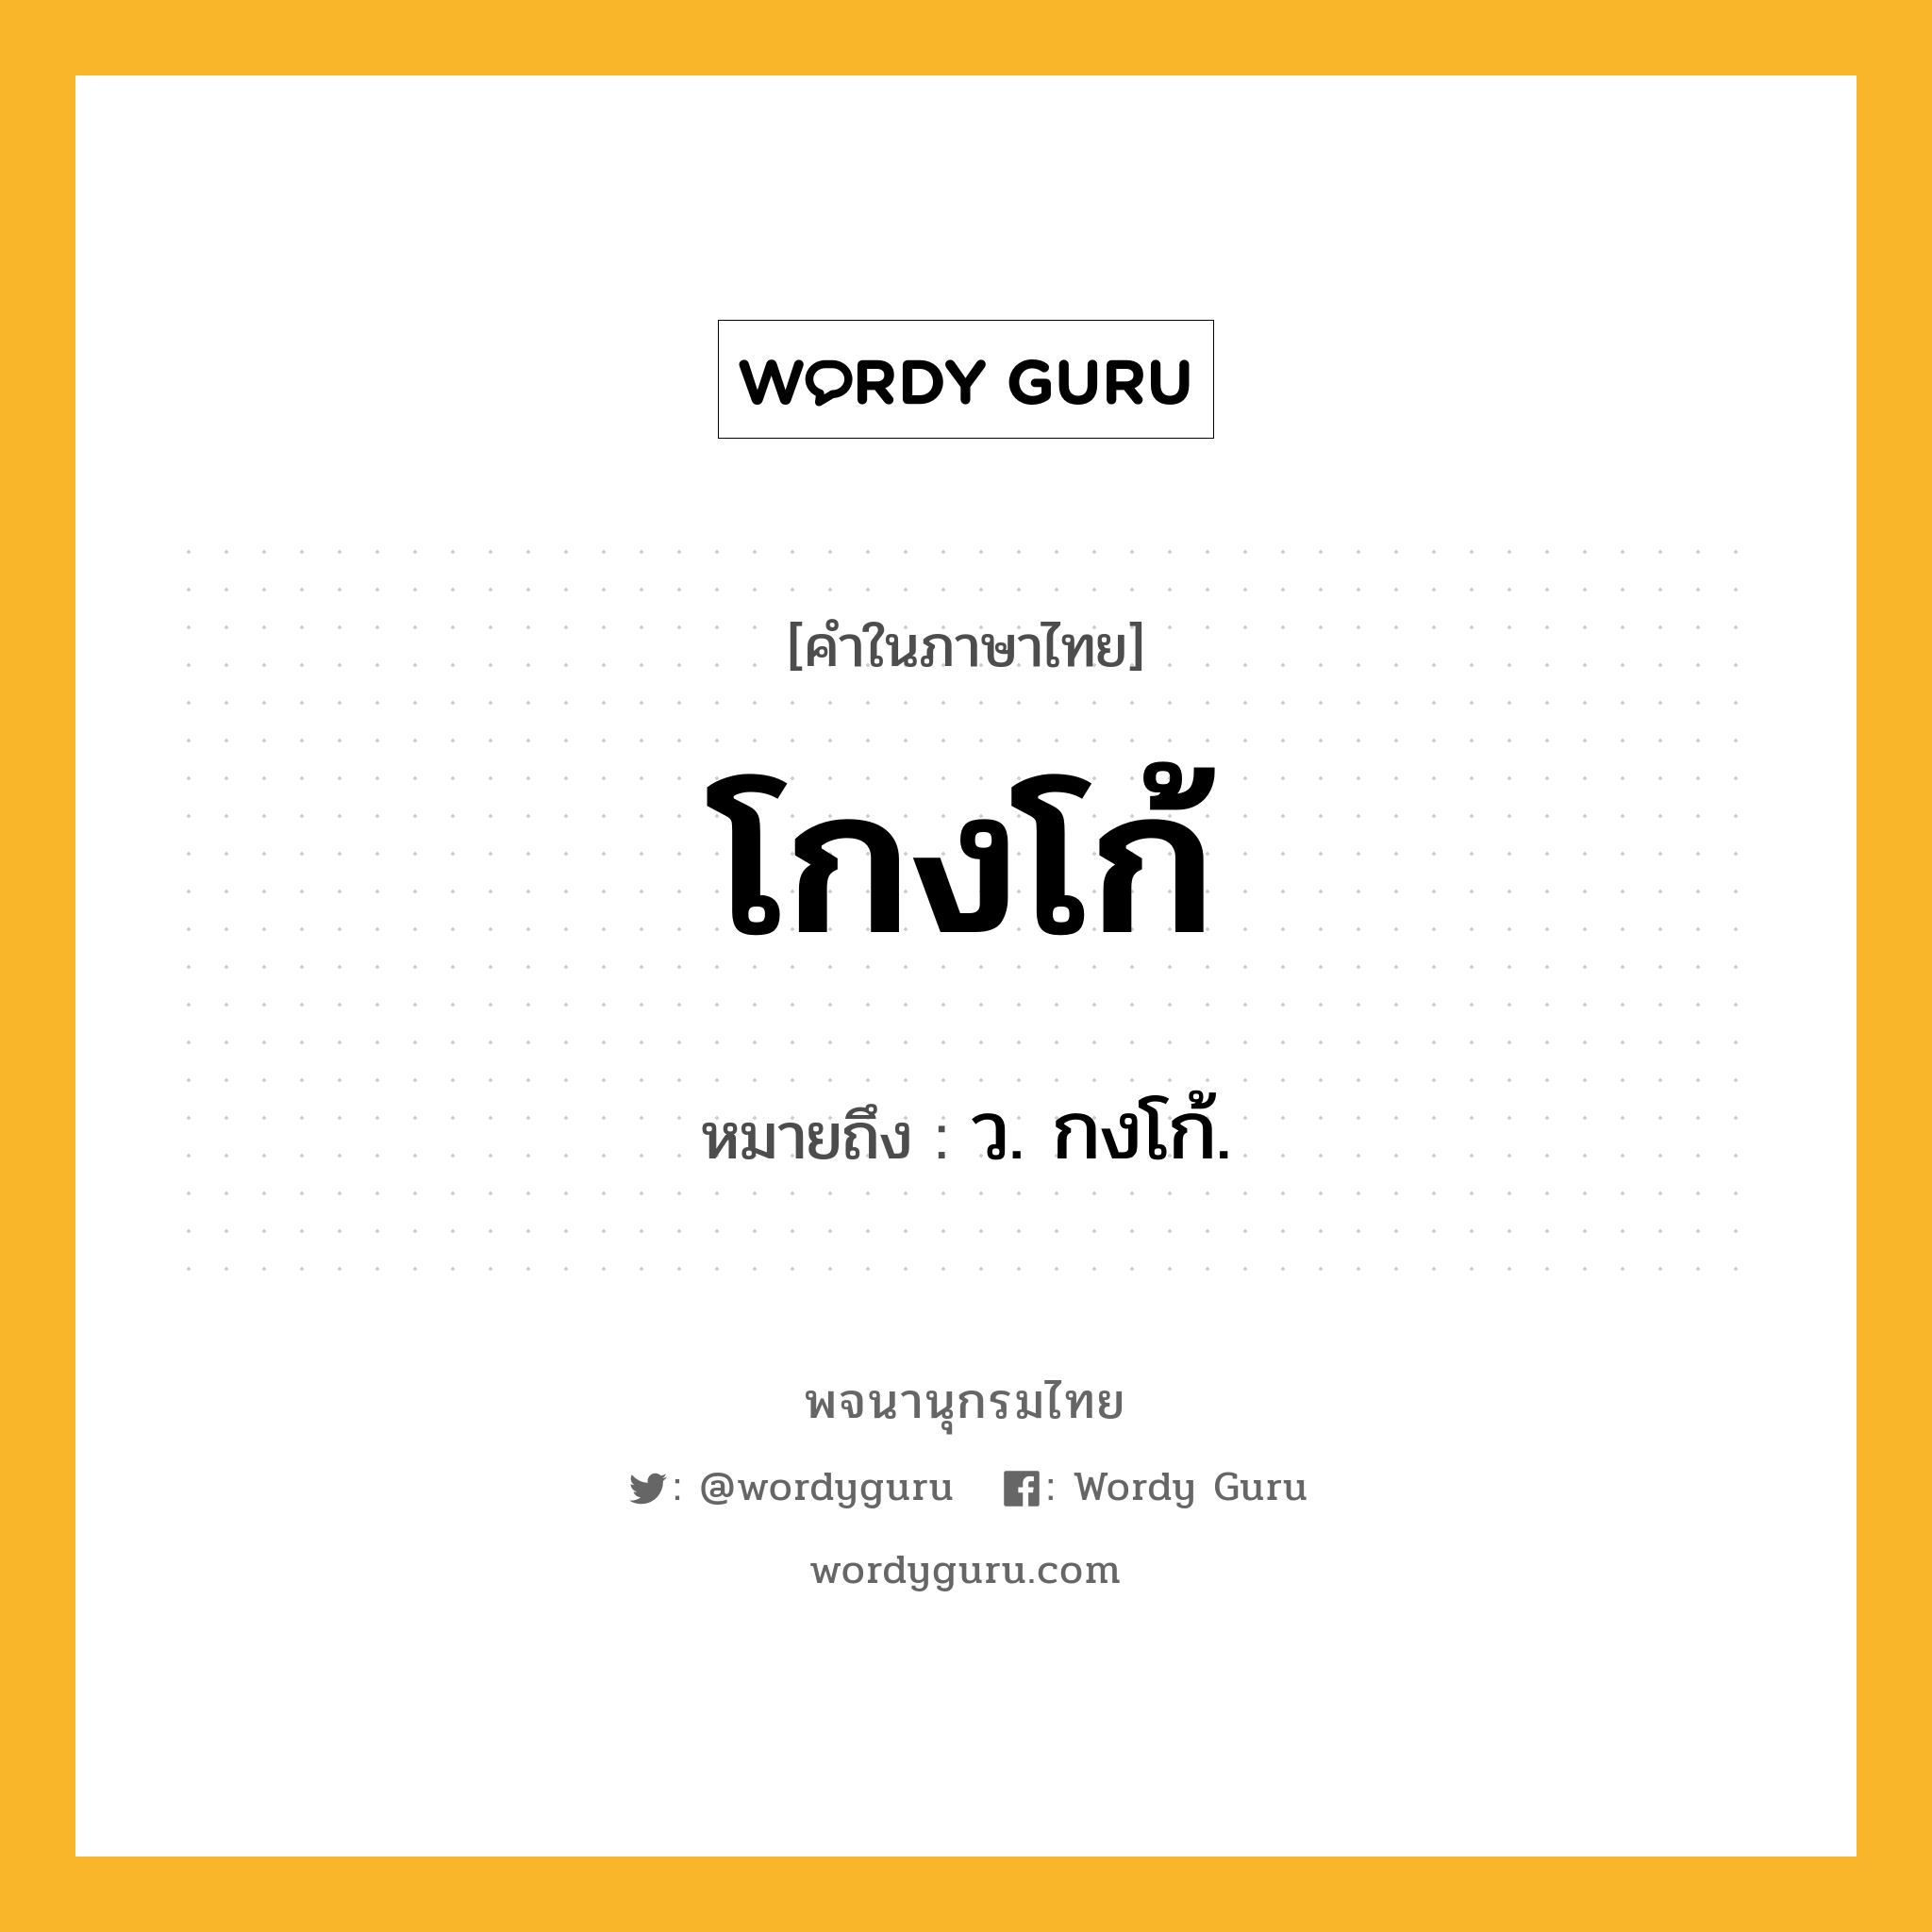 โกงโก้ ความหมาย หมายถึงอะไร?, คำในภาษาไทย โกงโก้ หมายถึง ว. กงโก้.